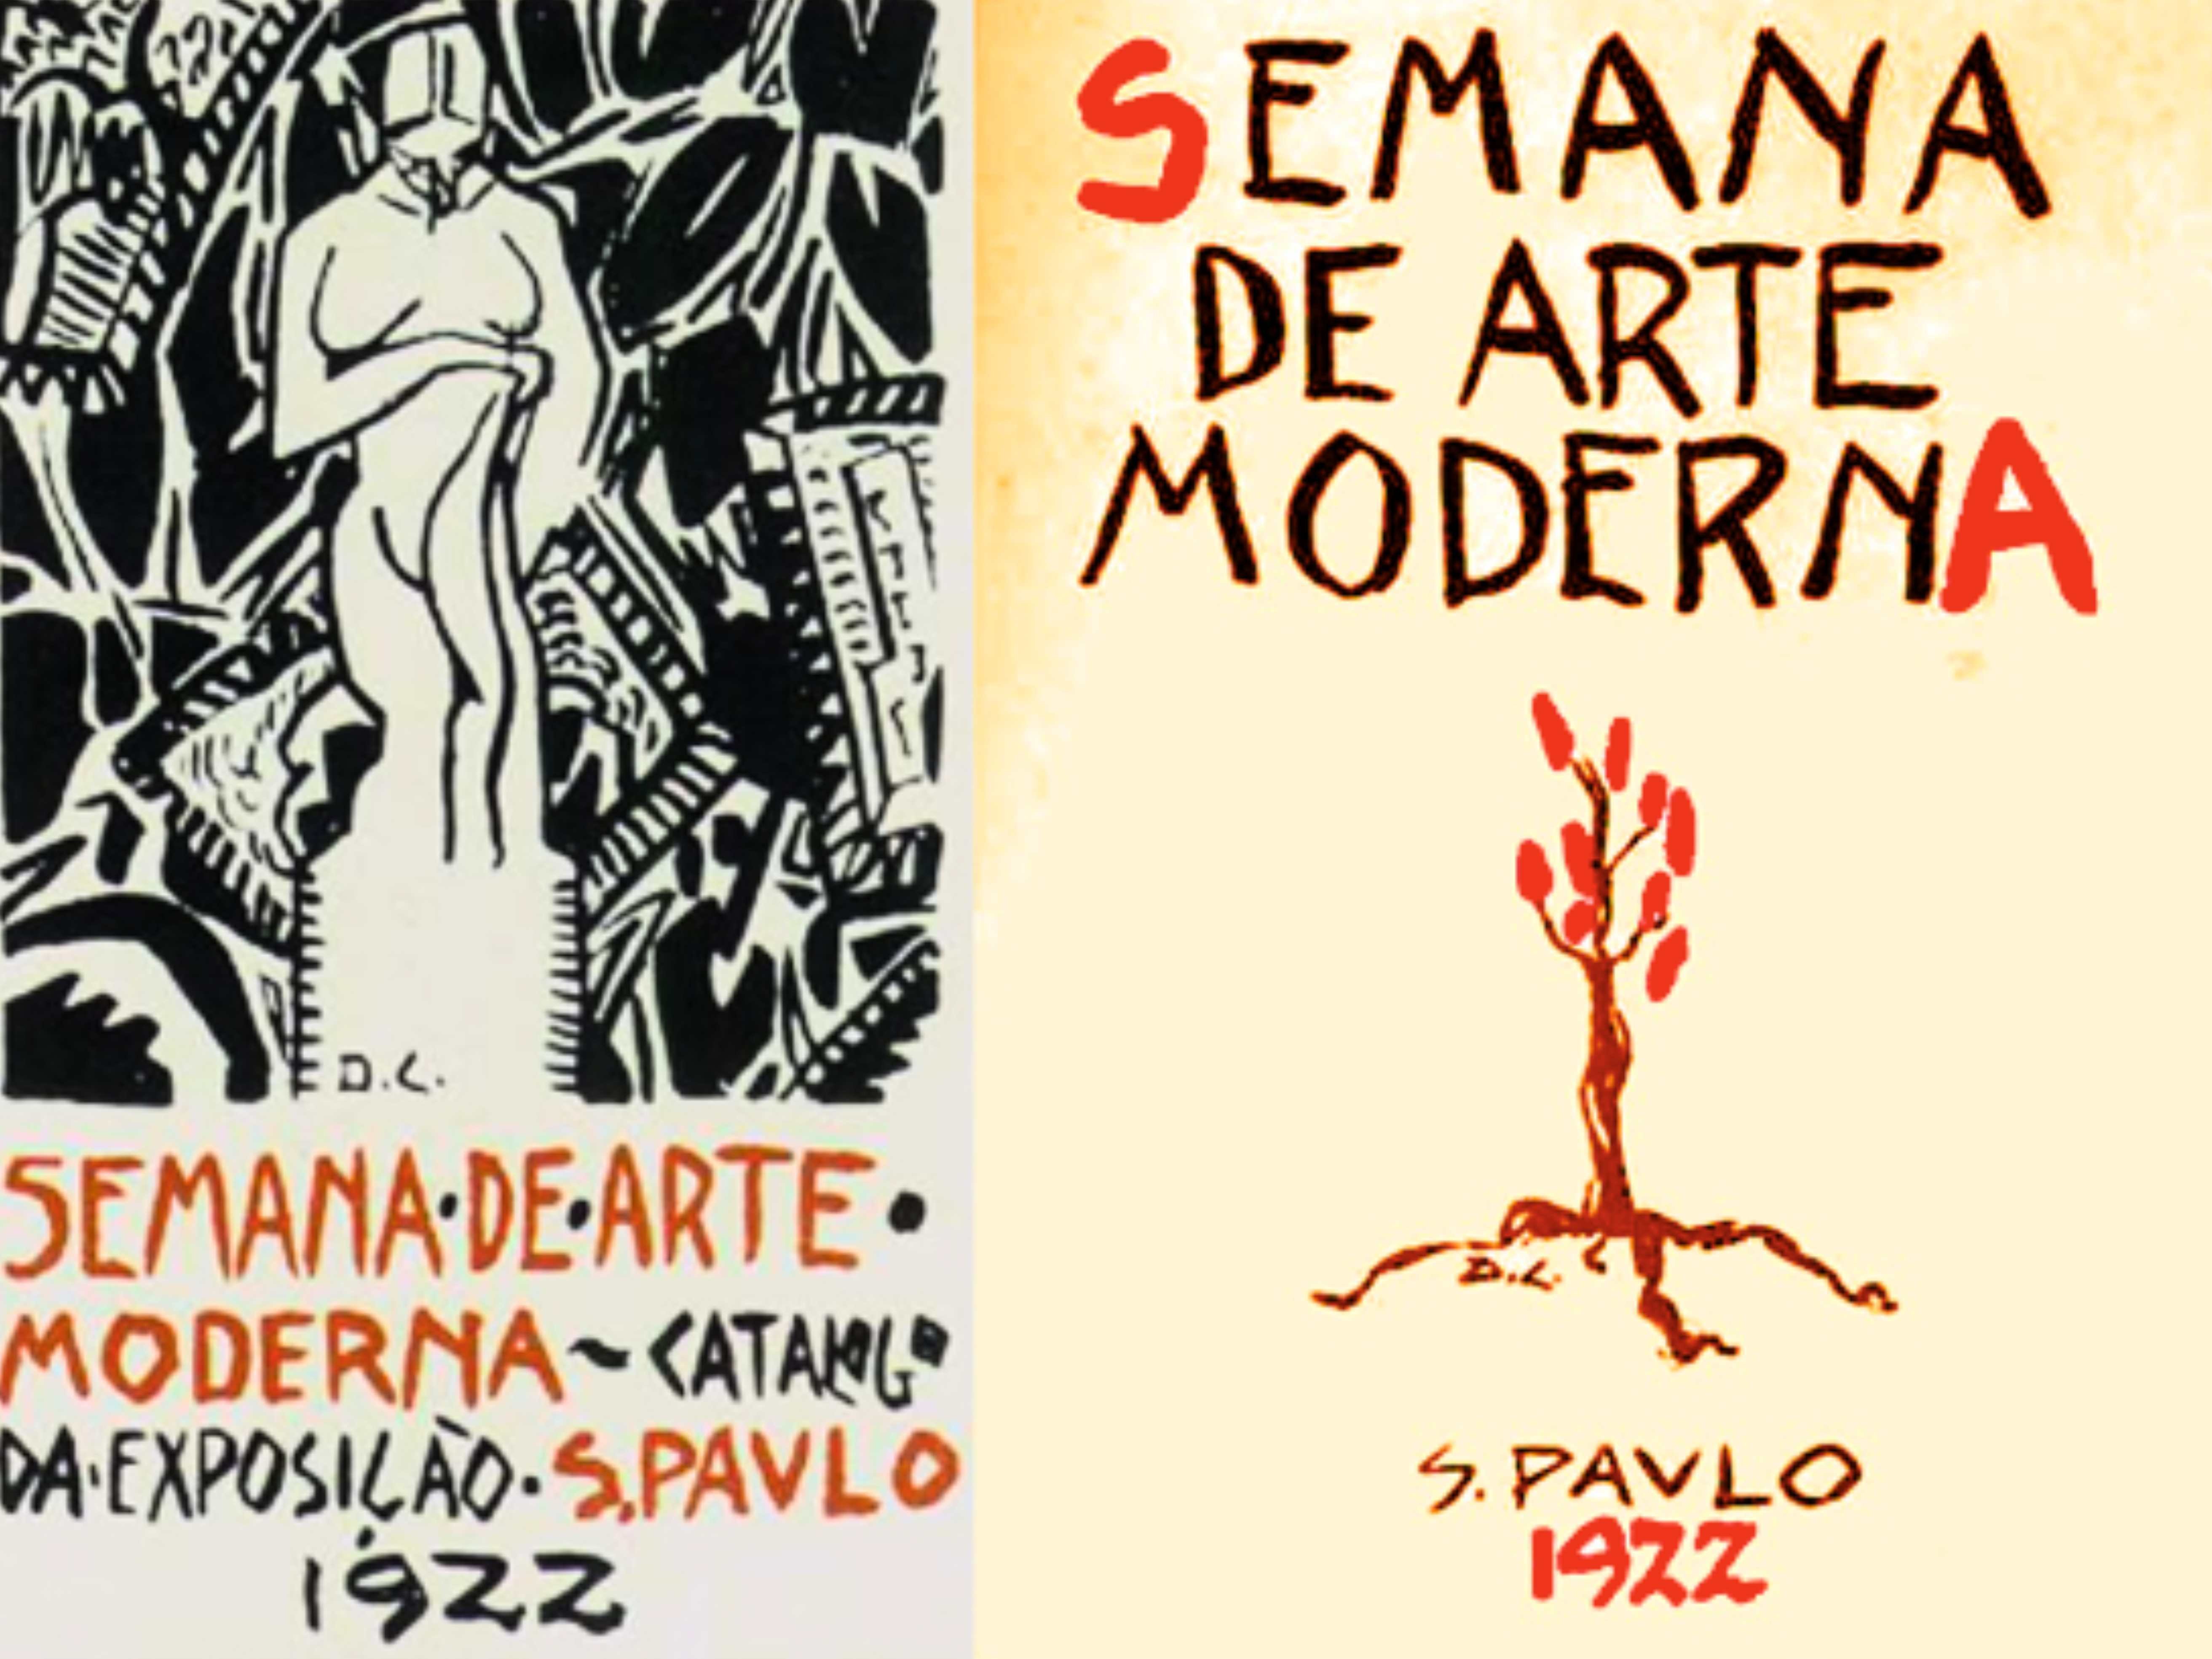 Capa do catálogo da Semana de 22 e cartaz do evento, ambos criados por Di Cavalcanti.